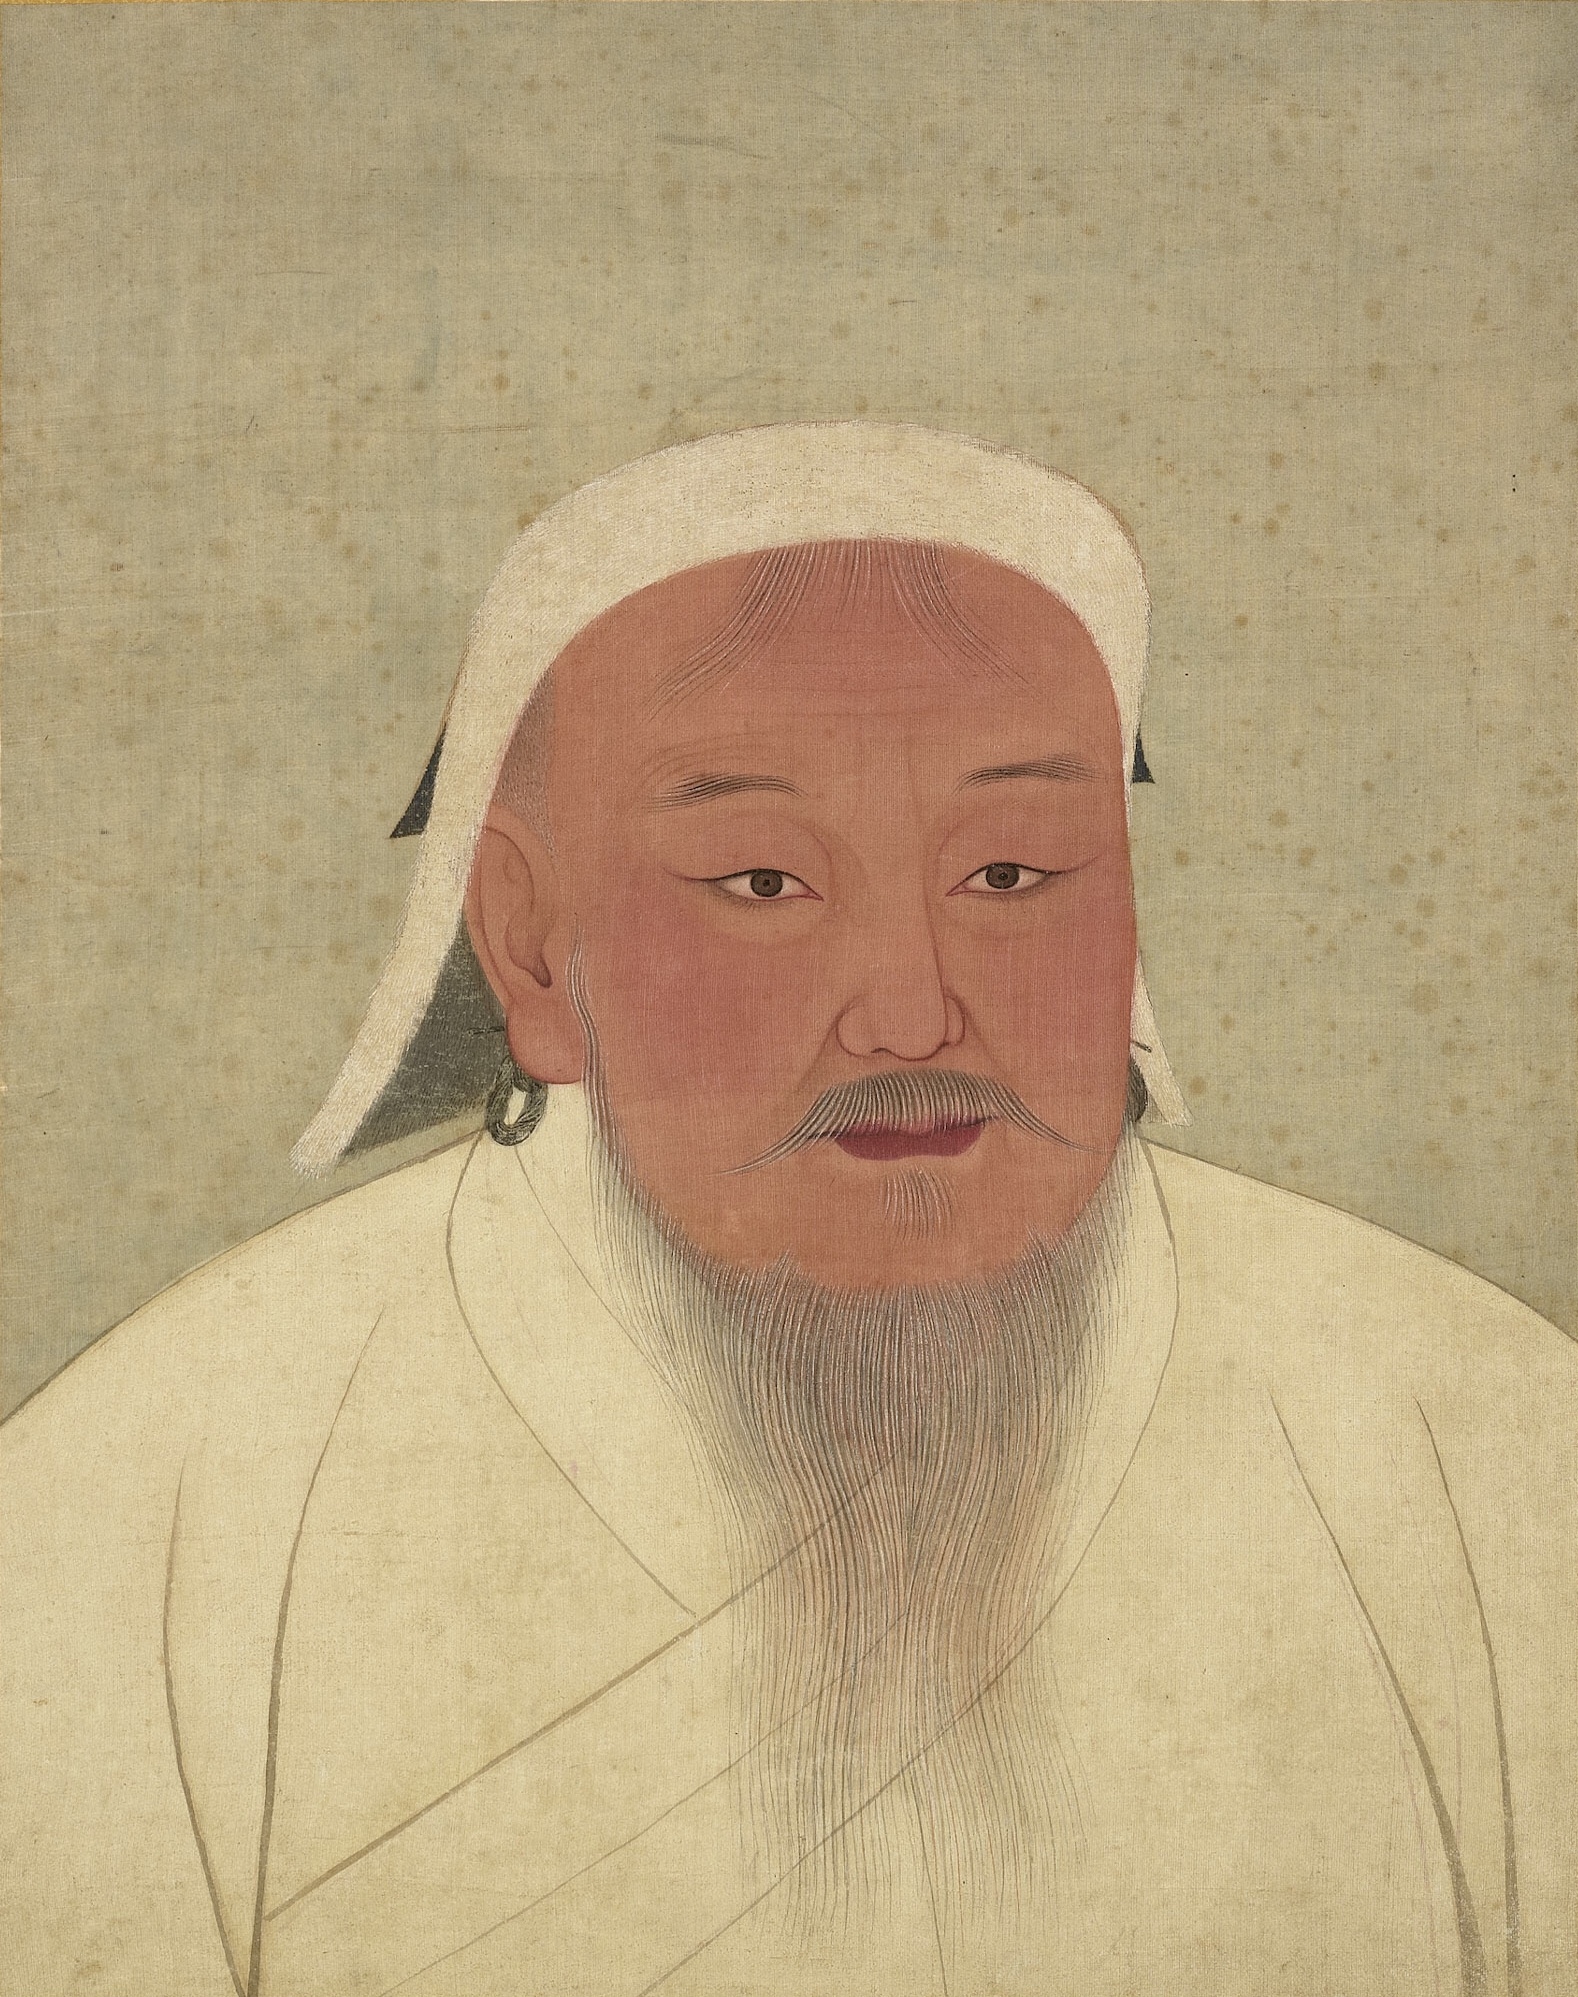 قبائل المغول , تاريخ المغول وعدائهم للمسلمين